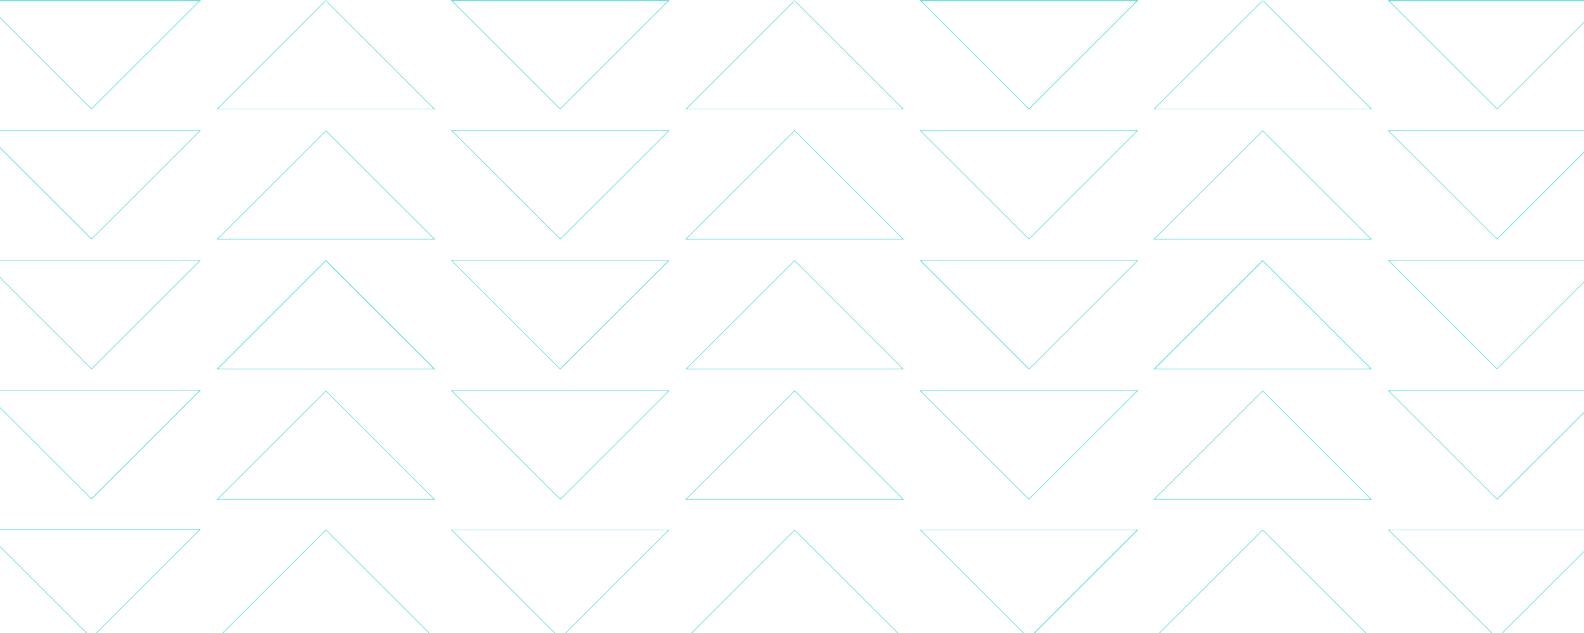 Illustrazione che mostra sottili linee blu che formano delicati motivi triangolari